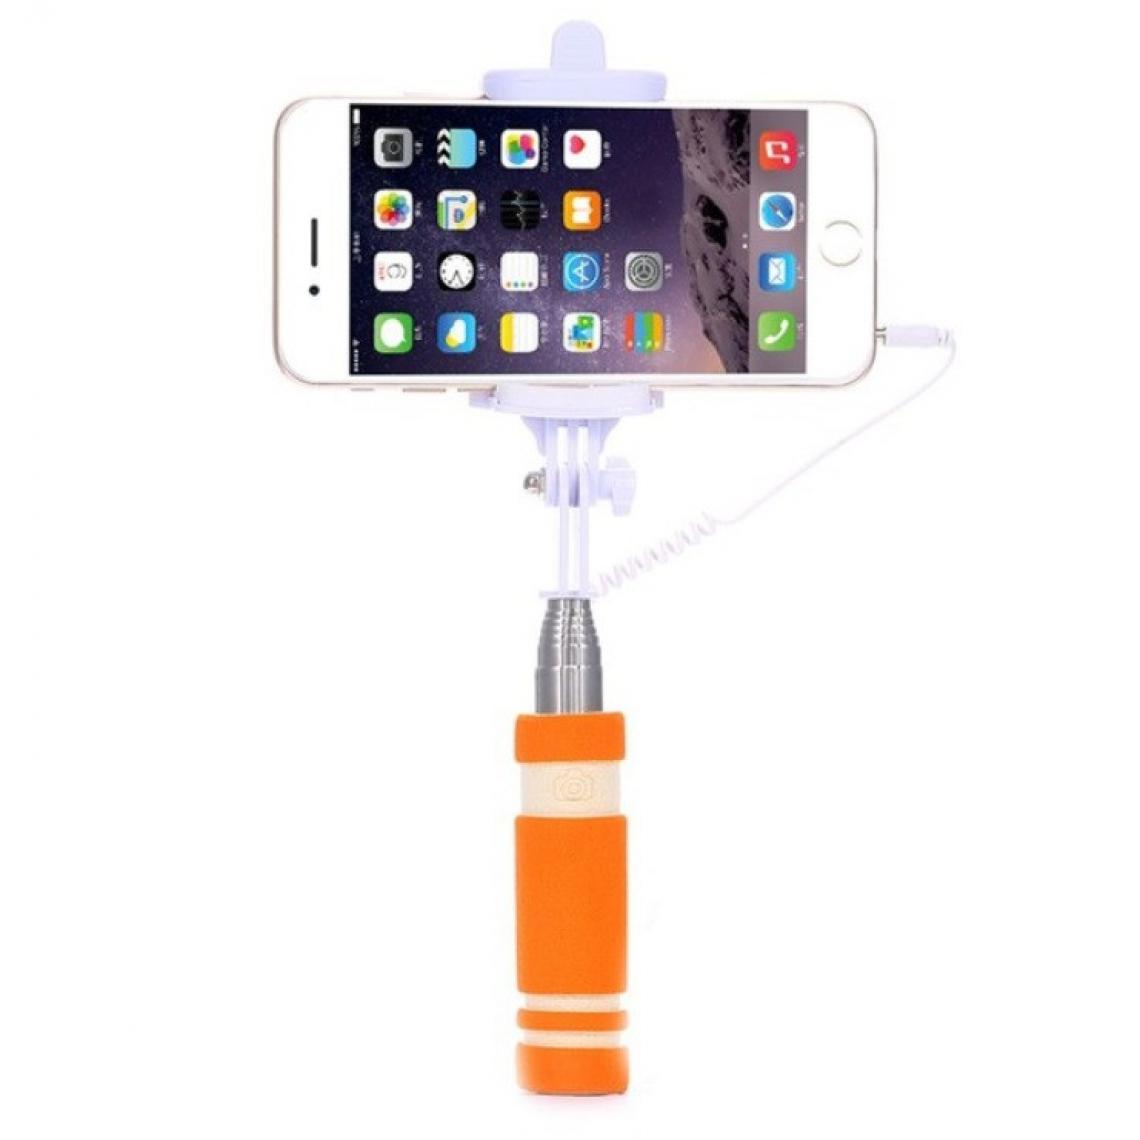 Shot - Mini Perche Selfie pour "SAMSUNG Galaxy Note 20 Ultra" Smartphone avec Cable Jack Selfie Stick Android IOS Reglable Bouton Photo (ORANGE) - Autres accessoires smartphone